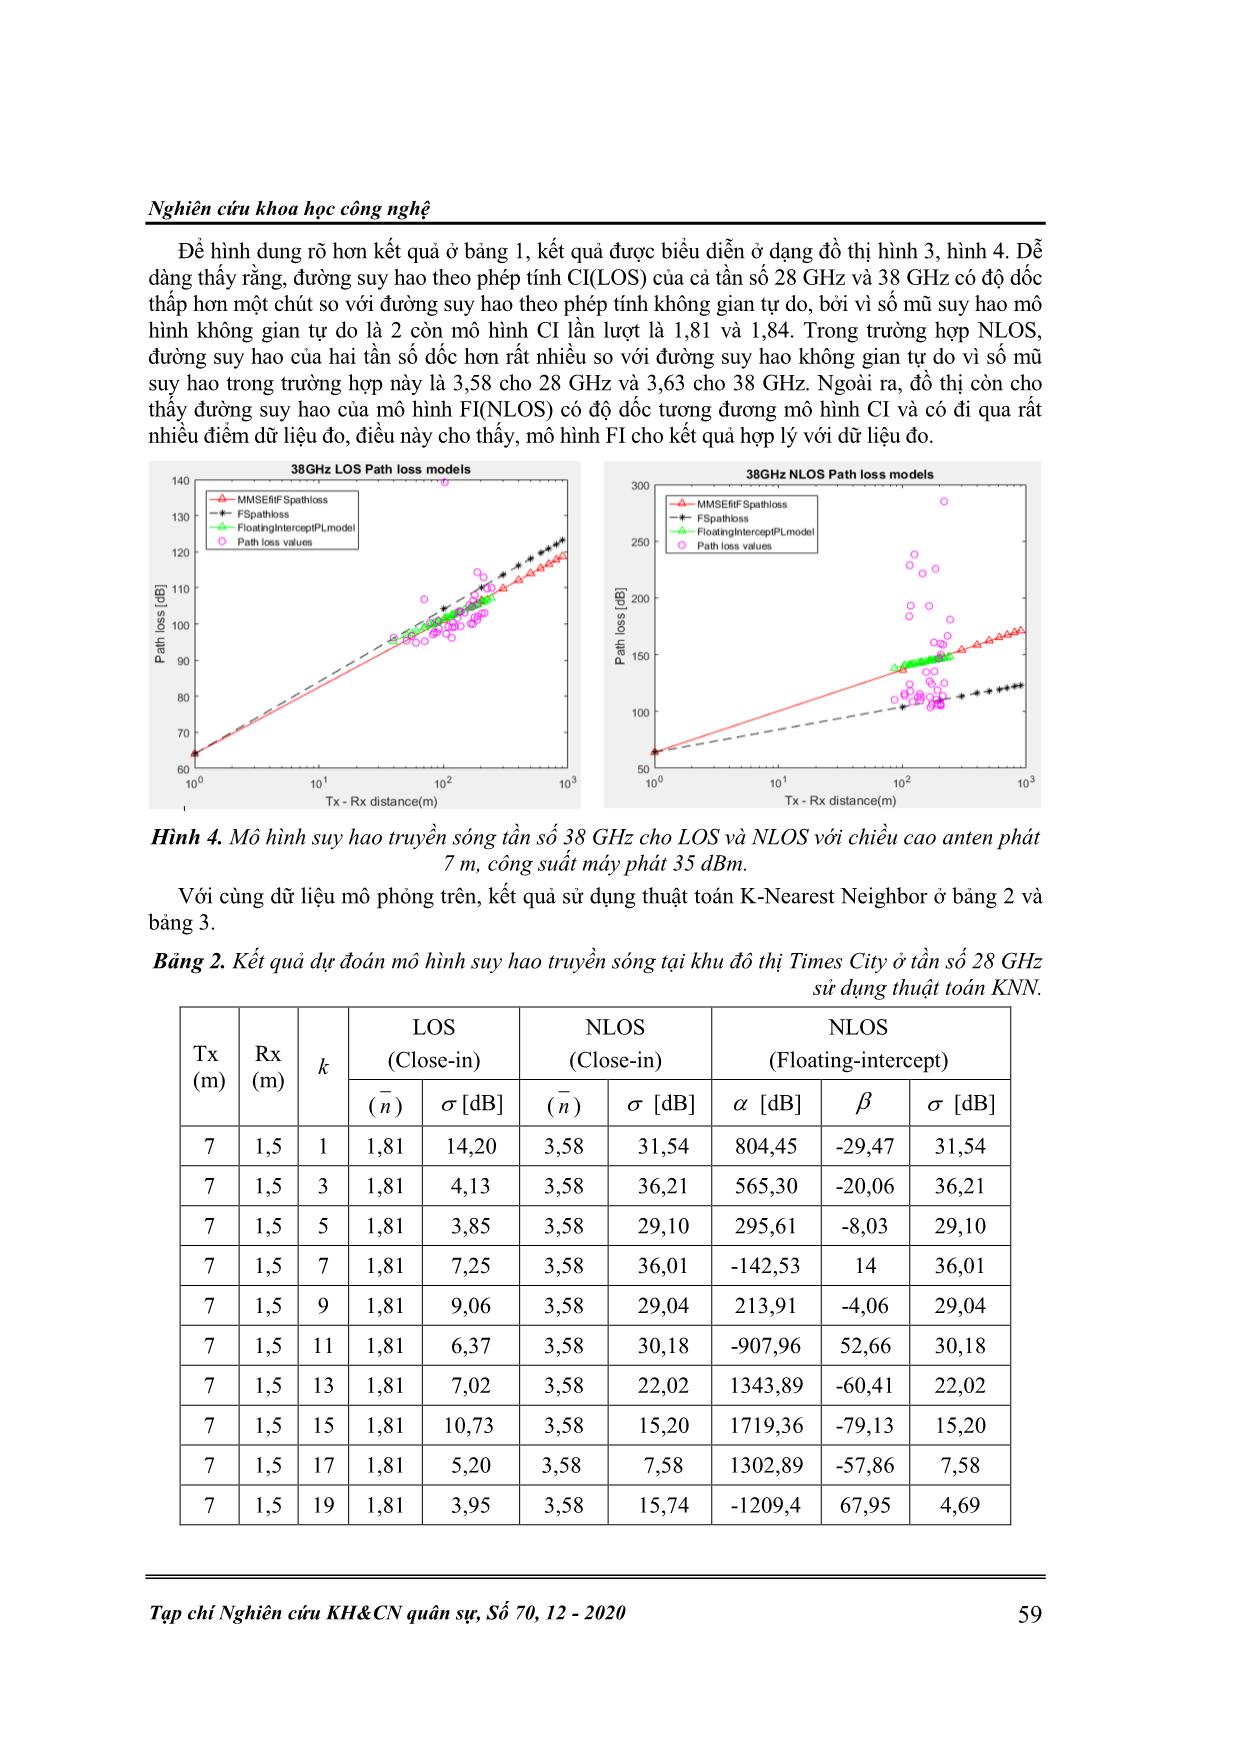 Ứng dụng thuật toán học máy trong ước lượng mô hình suy hao truyền sóng dải sóng milimet trang 6